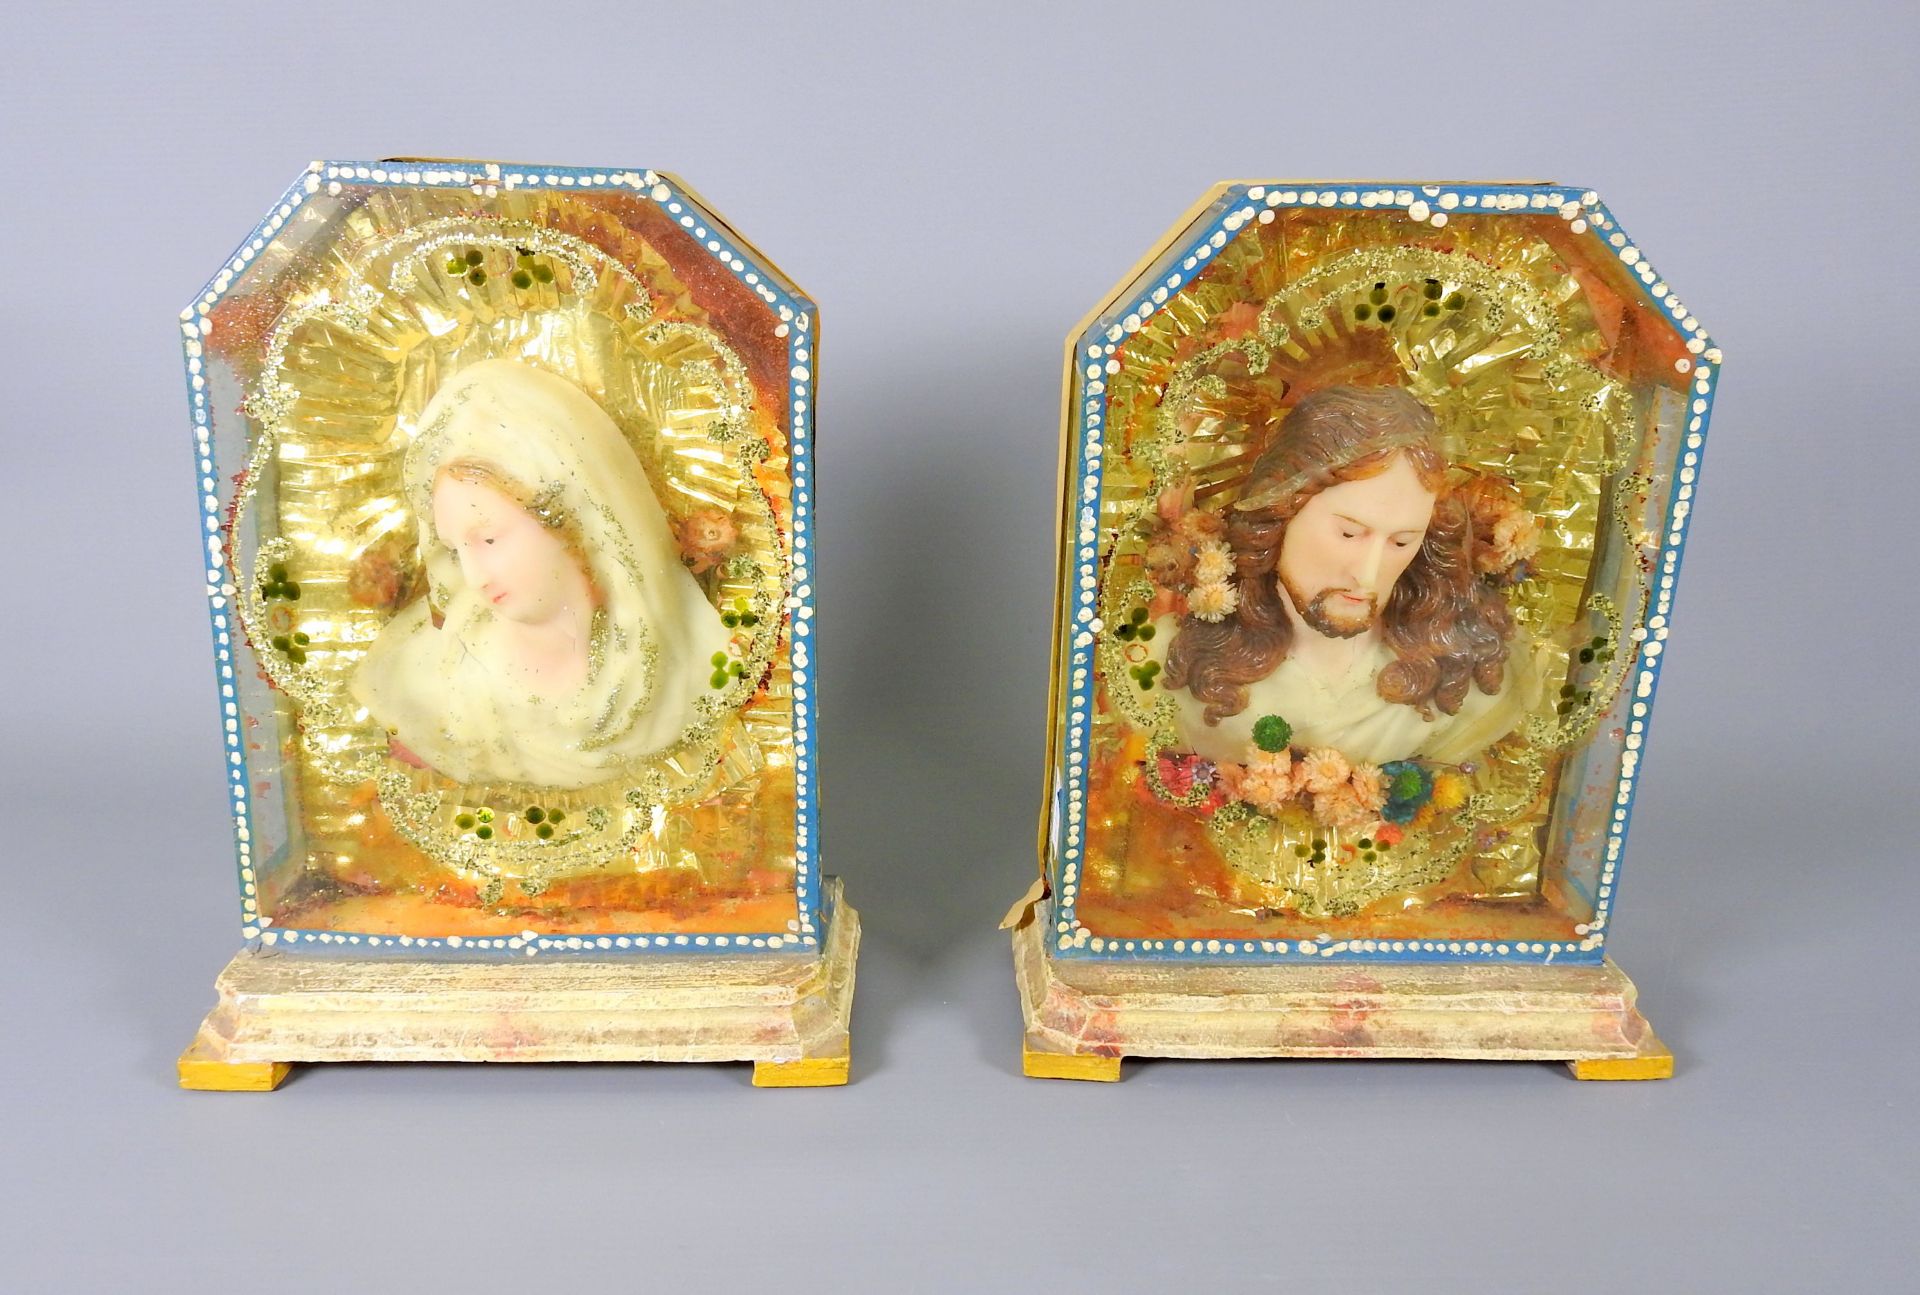 Klösterliche Wachsarbeiten mit Maria und Jesus Gefärbte Wachsfolien-Portraits im Kas